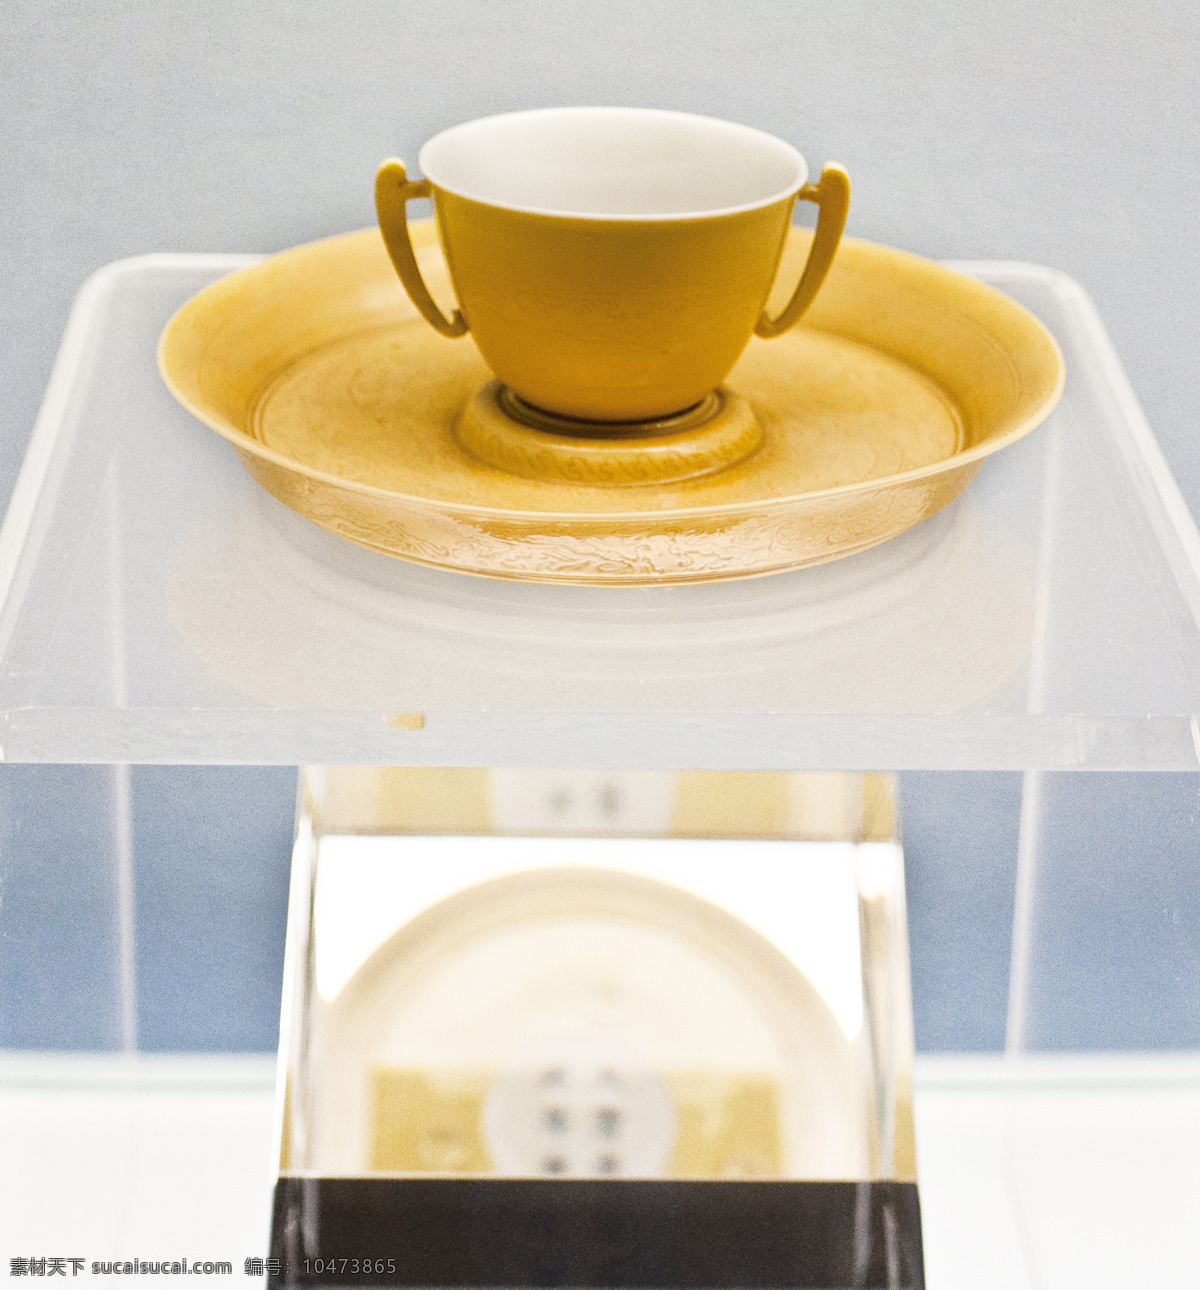 皇家茶杯 古代瓷器 壶 宫廷用品 展示 古代文化 博物馆 藏品 上海文化 上海博物馆 传统文化 文化艺术